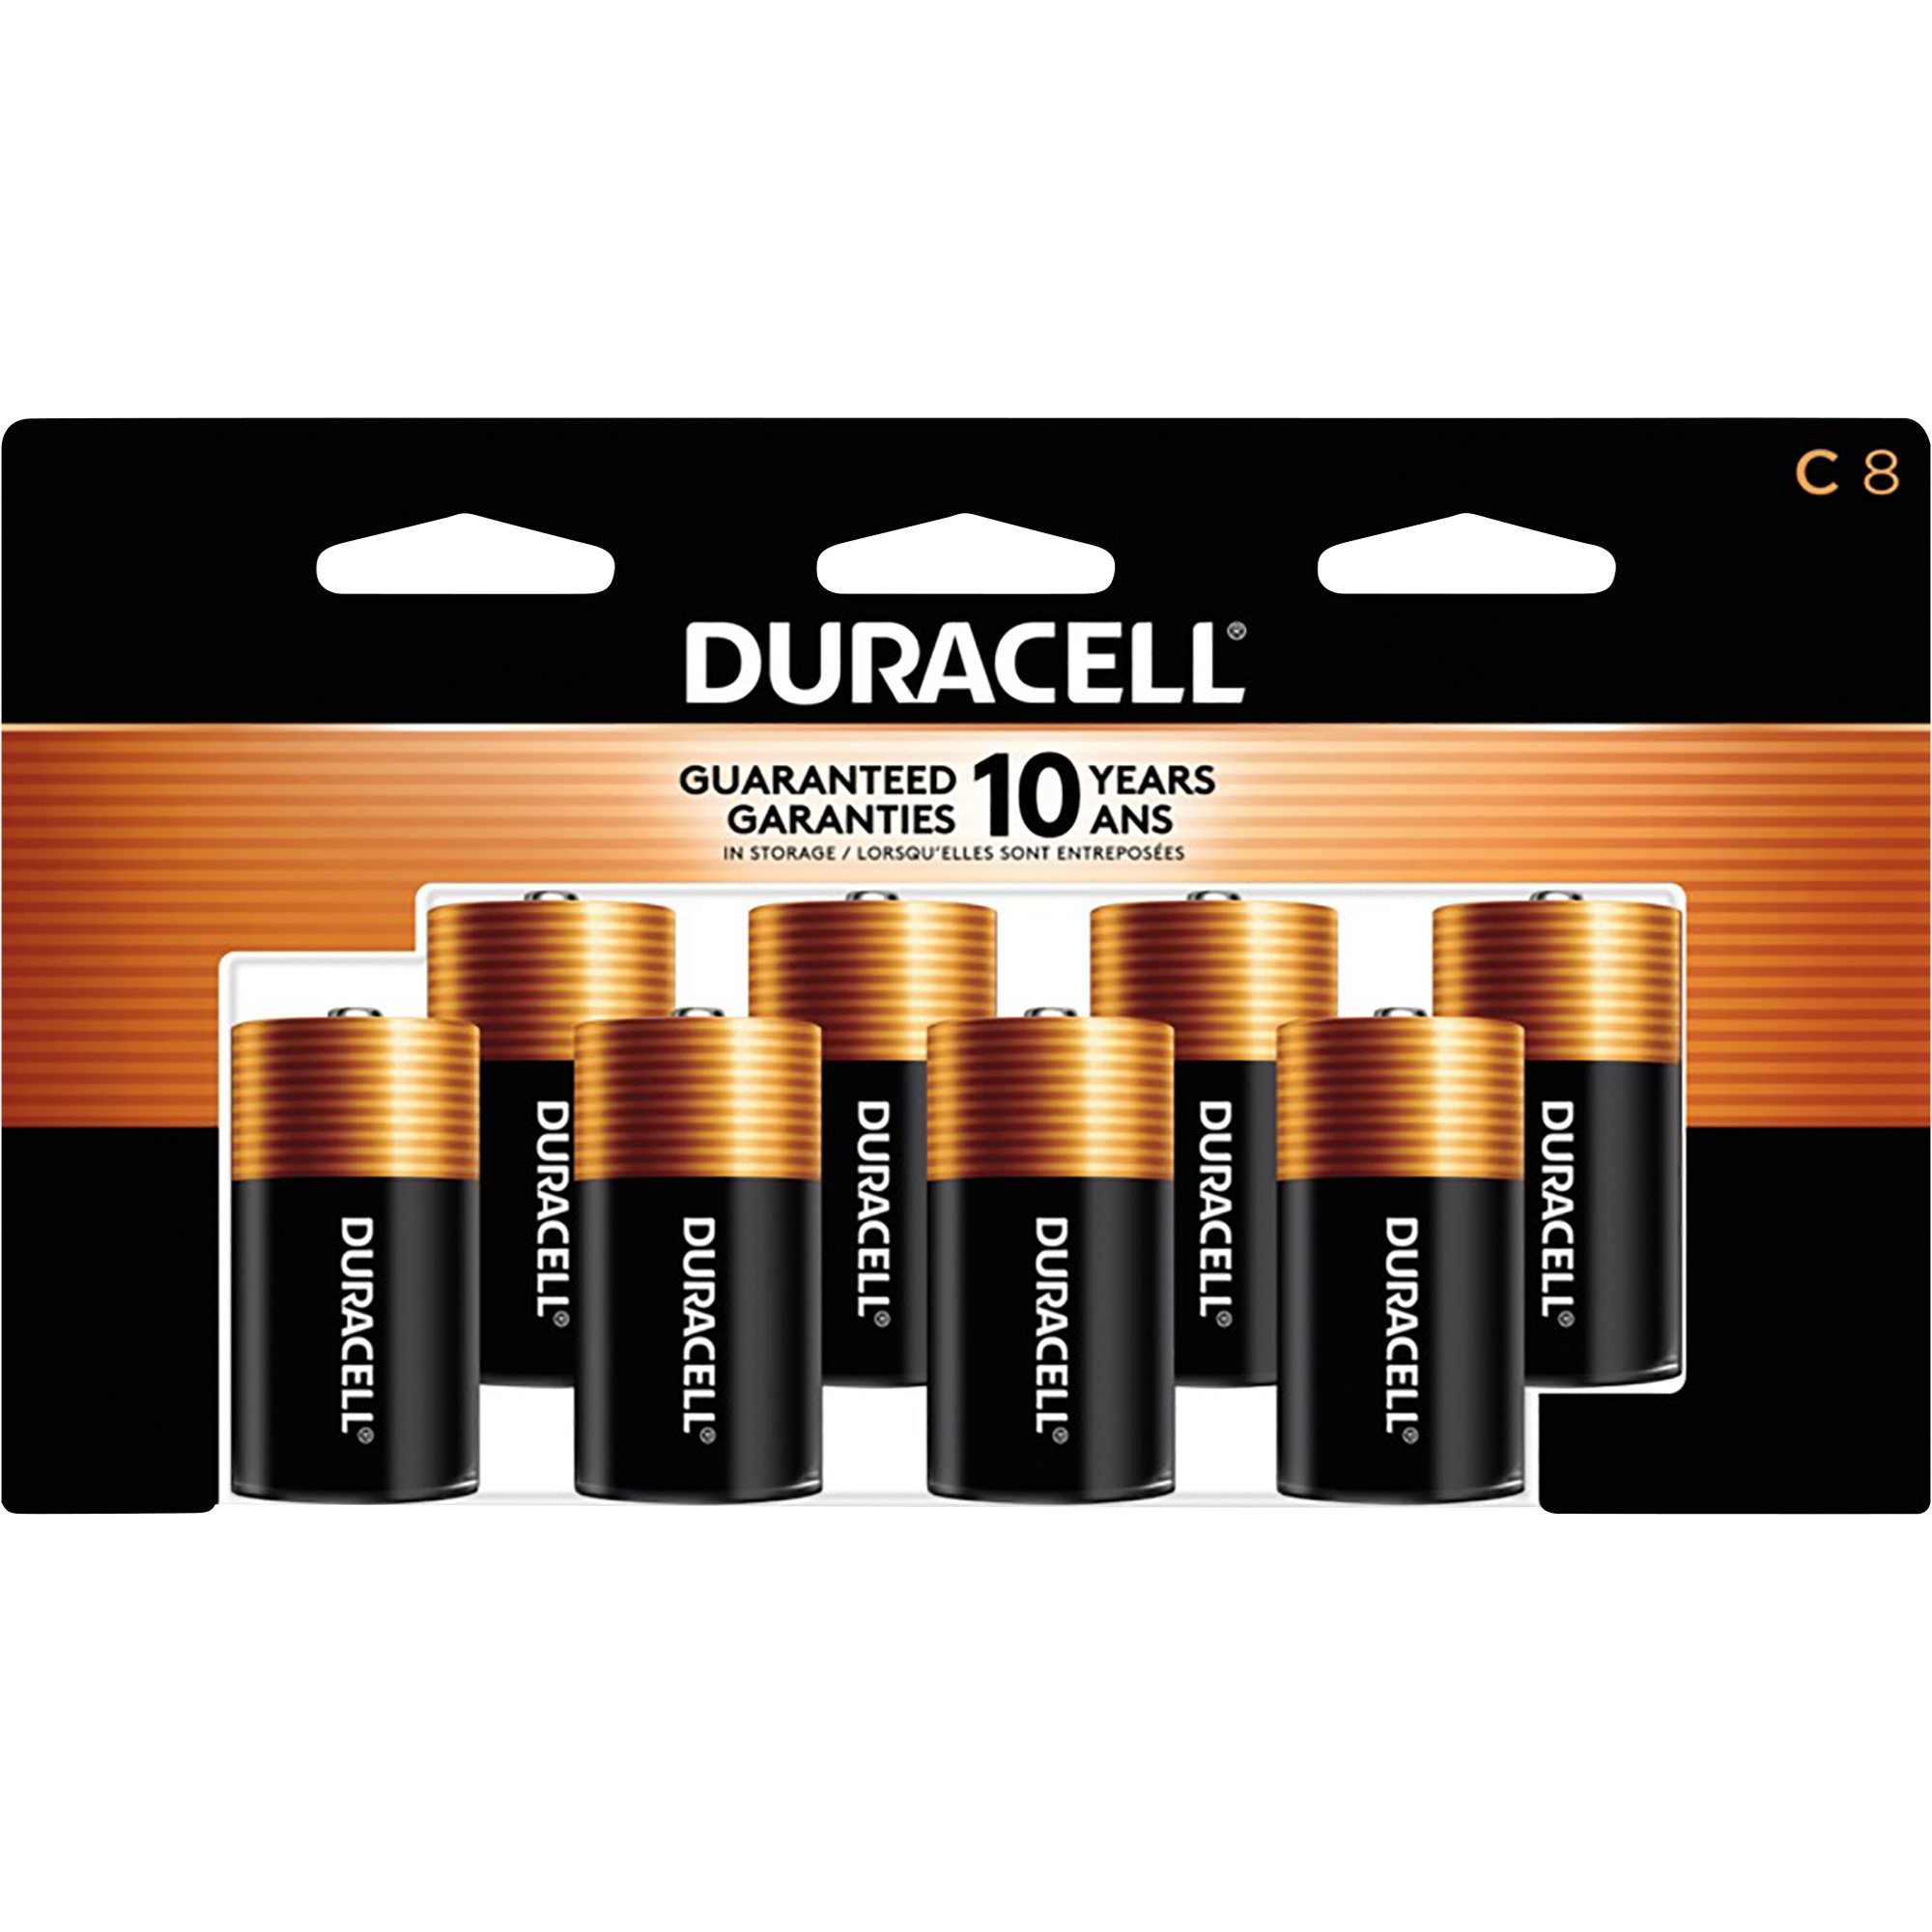 Duracell Coppertop C Batteries â 8-Pack